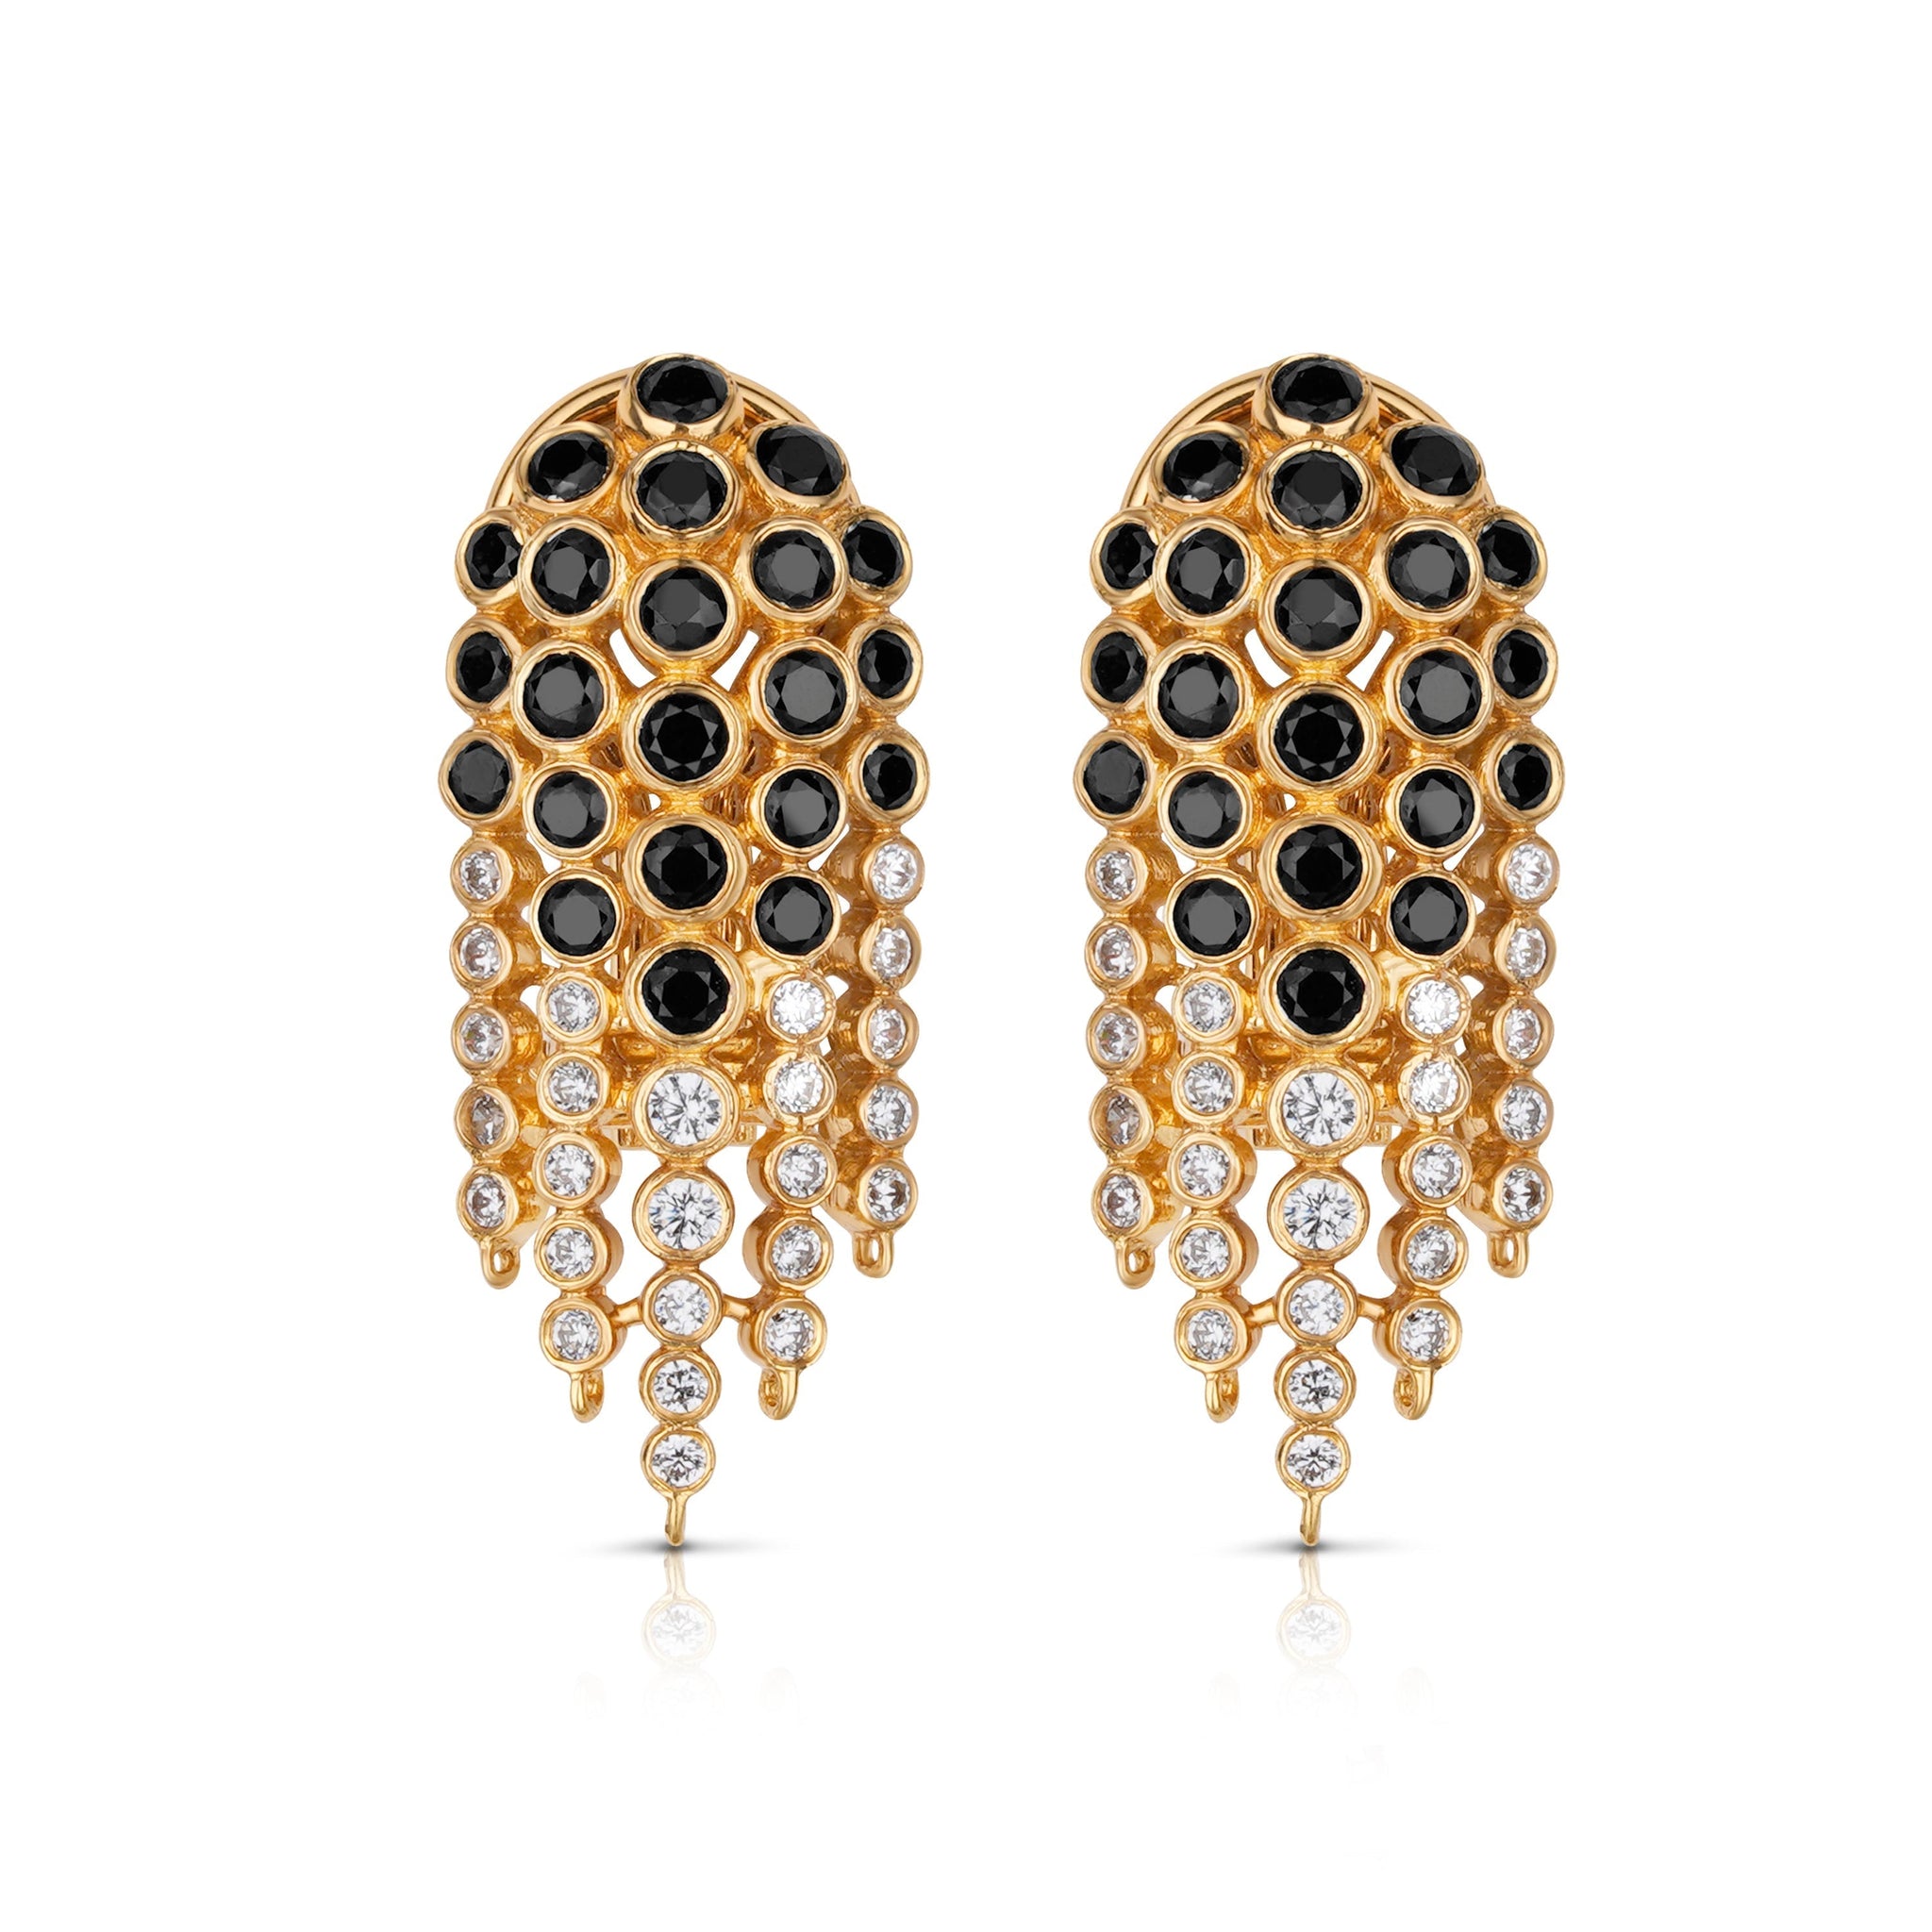 Flower Shower Earrings - Black and Gold